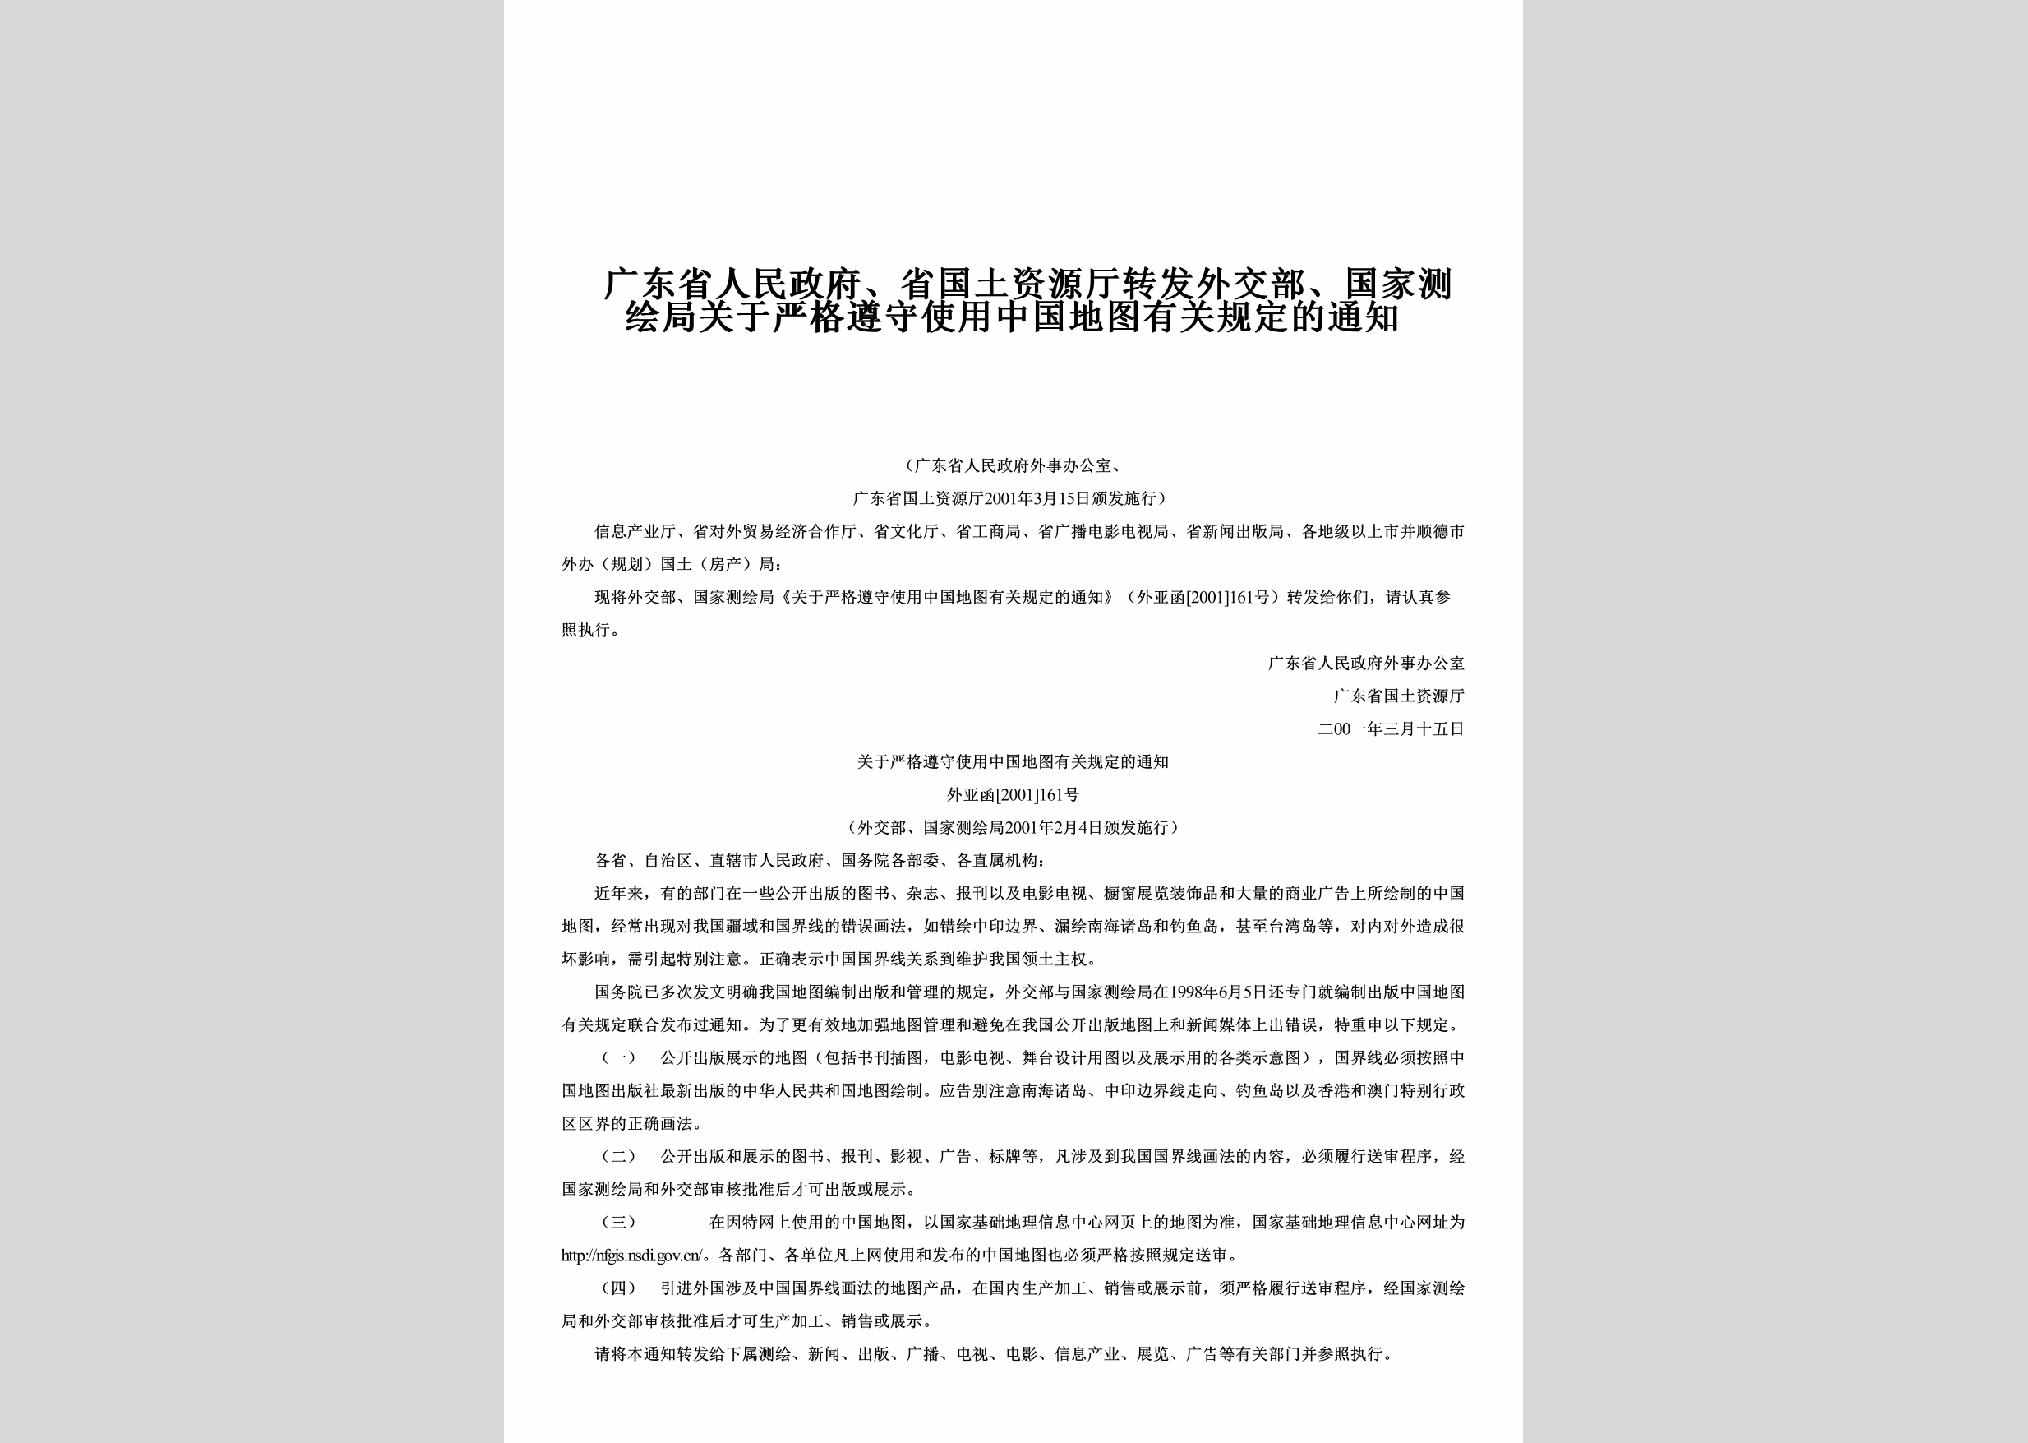 GD-WJBGJCH-2001：转发外交部、国家测绘局关于严格遵守使用中国地图有关规定的通知